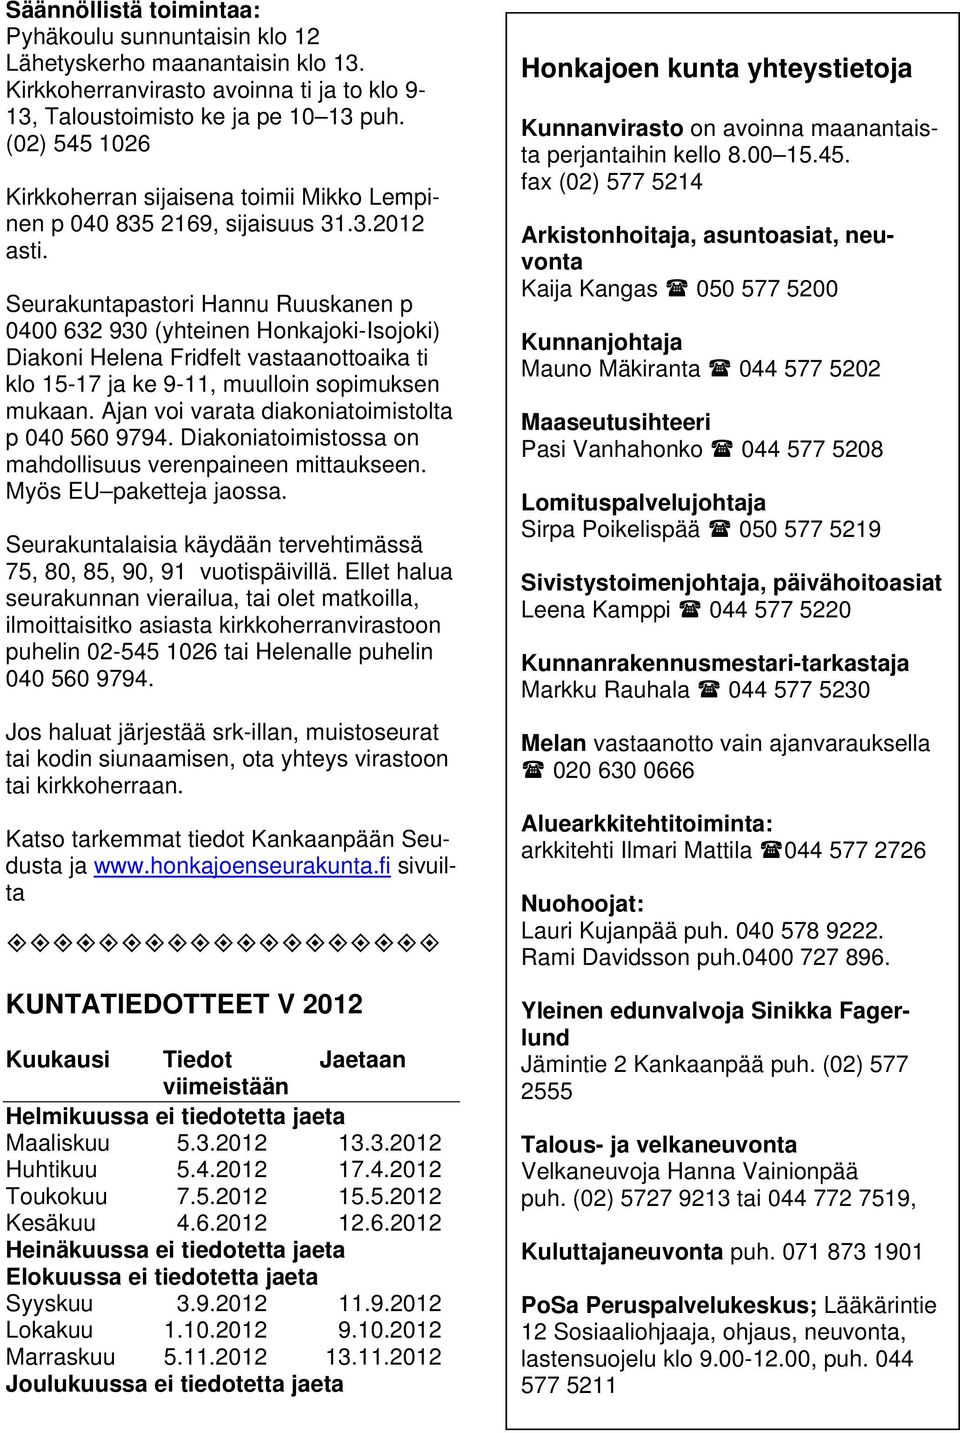 Seurakuntapastori Hannu Ruuskanen p 0400 632 930 (yhteinen Honkajoki-Isojoki) Diakoni Helena Fridfelt vastaanottoaika ti klo 15-17 ja ke 9-11, muulloin sopimuksen mukaan.